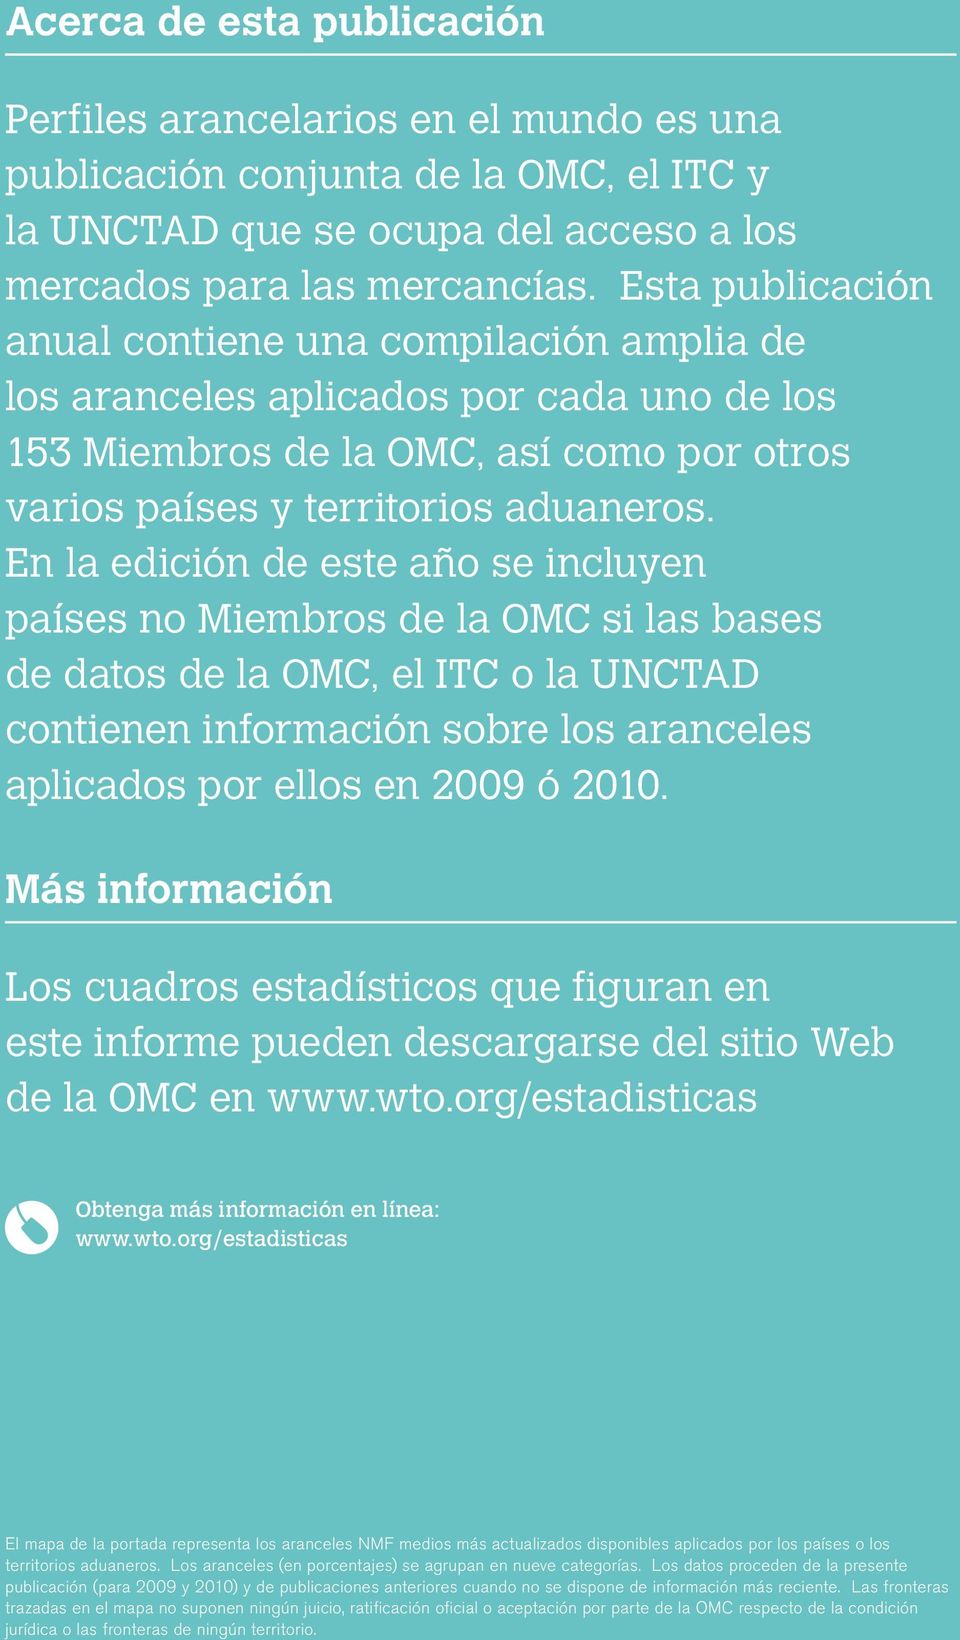 En la edición de este año se incluyen países no Miembros de la OMC si las bases de datos de la OMC, el ITC o la UNCTAD contienen información sobre los aranceles aplicados por ellos en 2009 ó 2010.